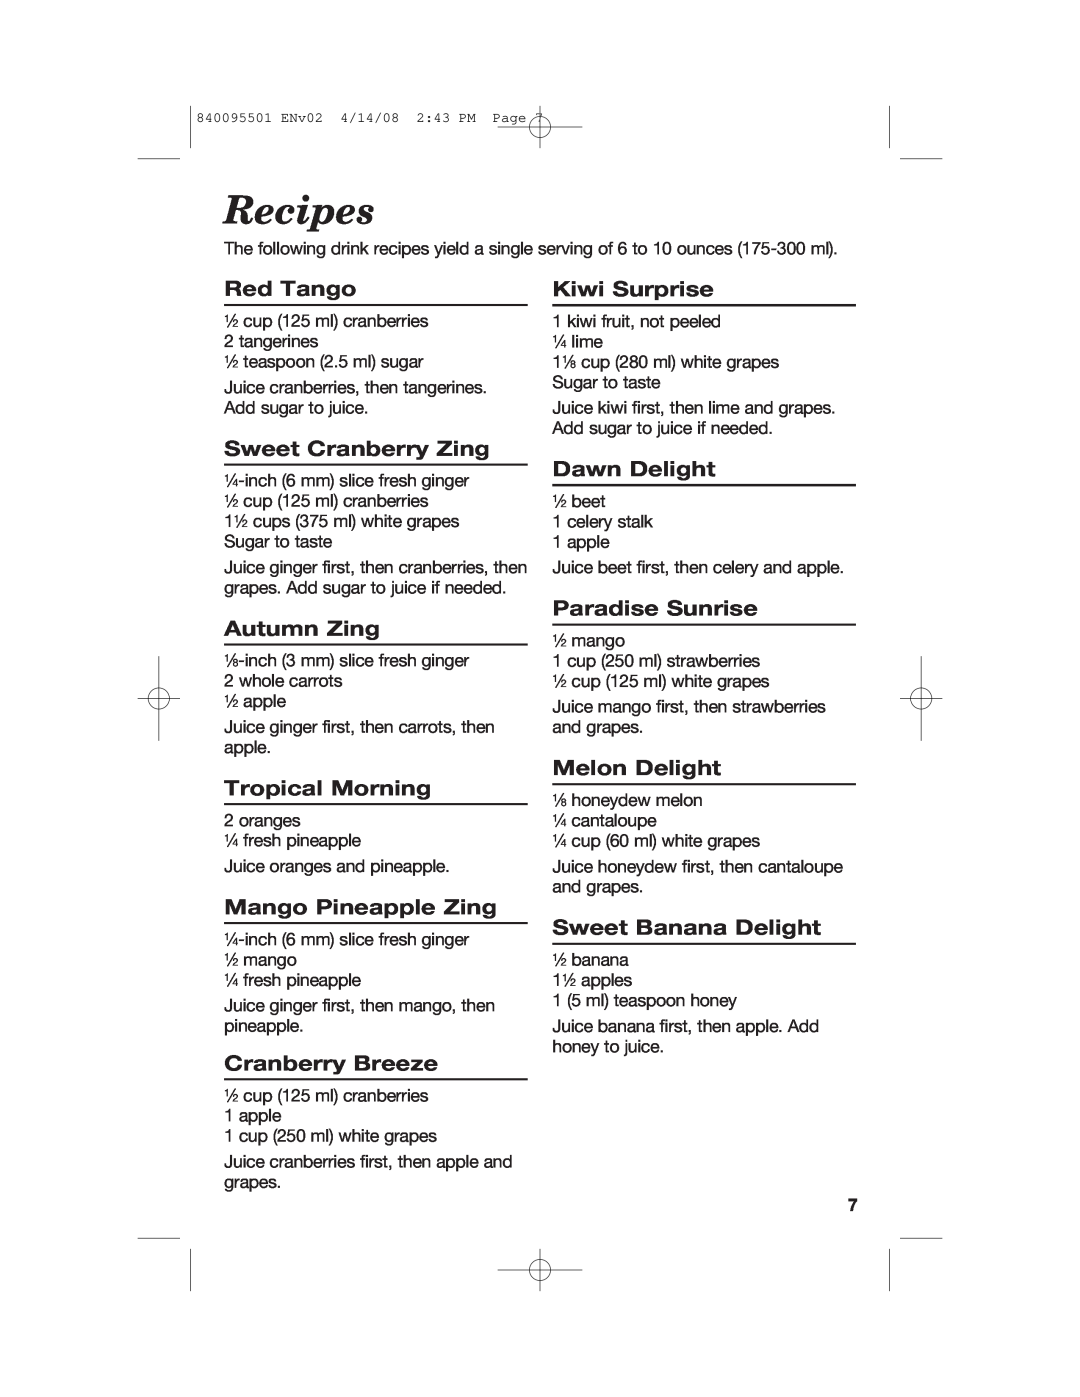 Hamilton Beach 840095501 manual Recipes 